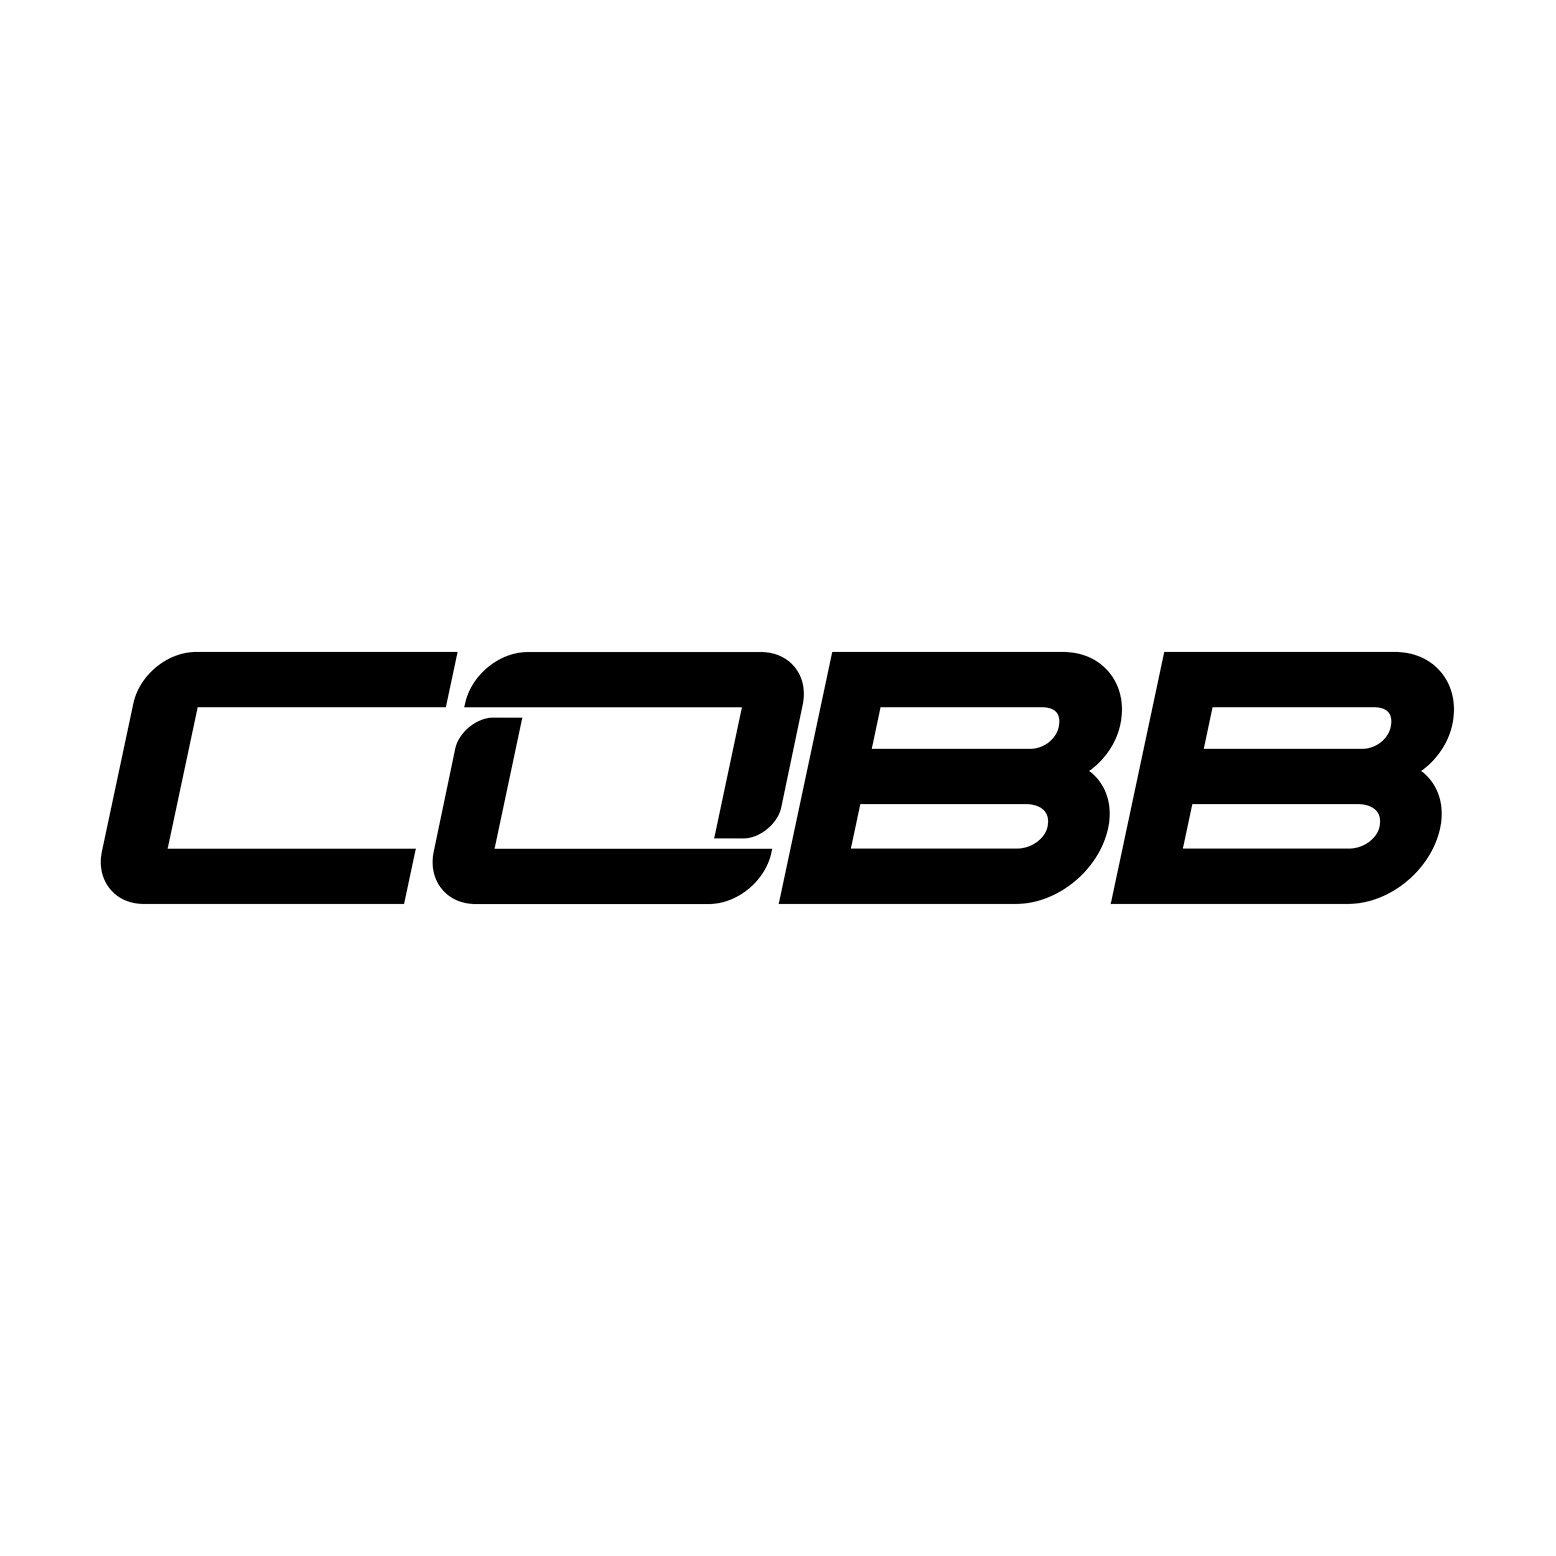 COBB Tuning Logo T-Shirt - Men's White